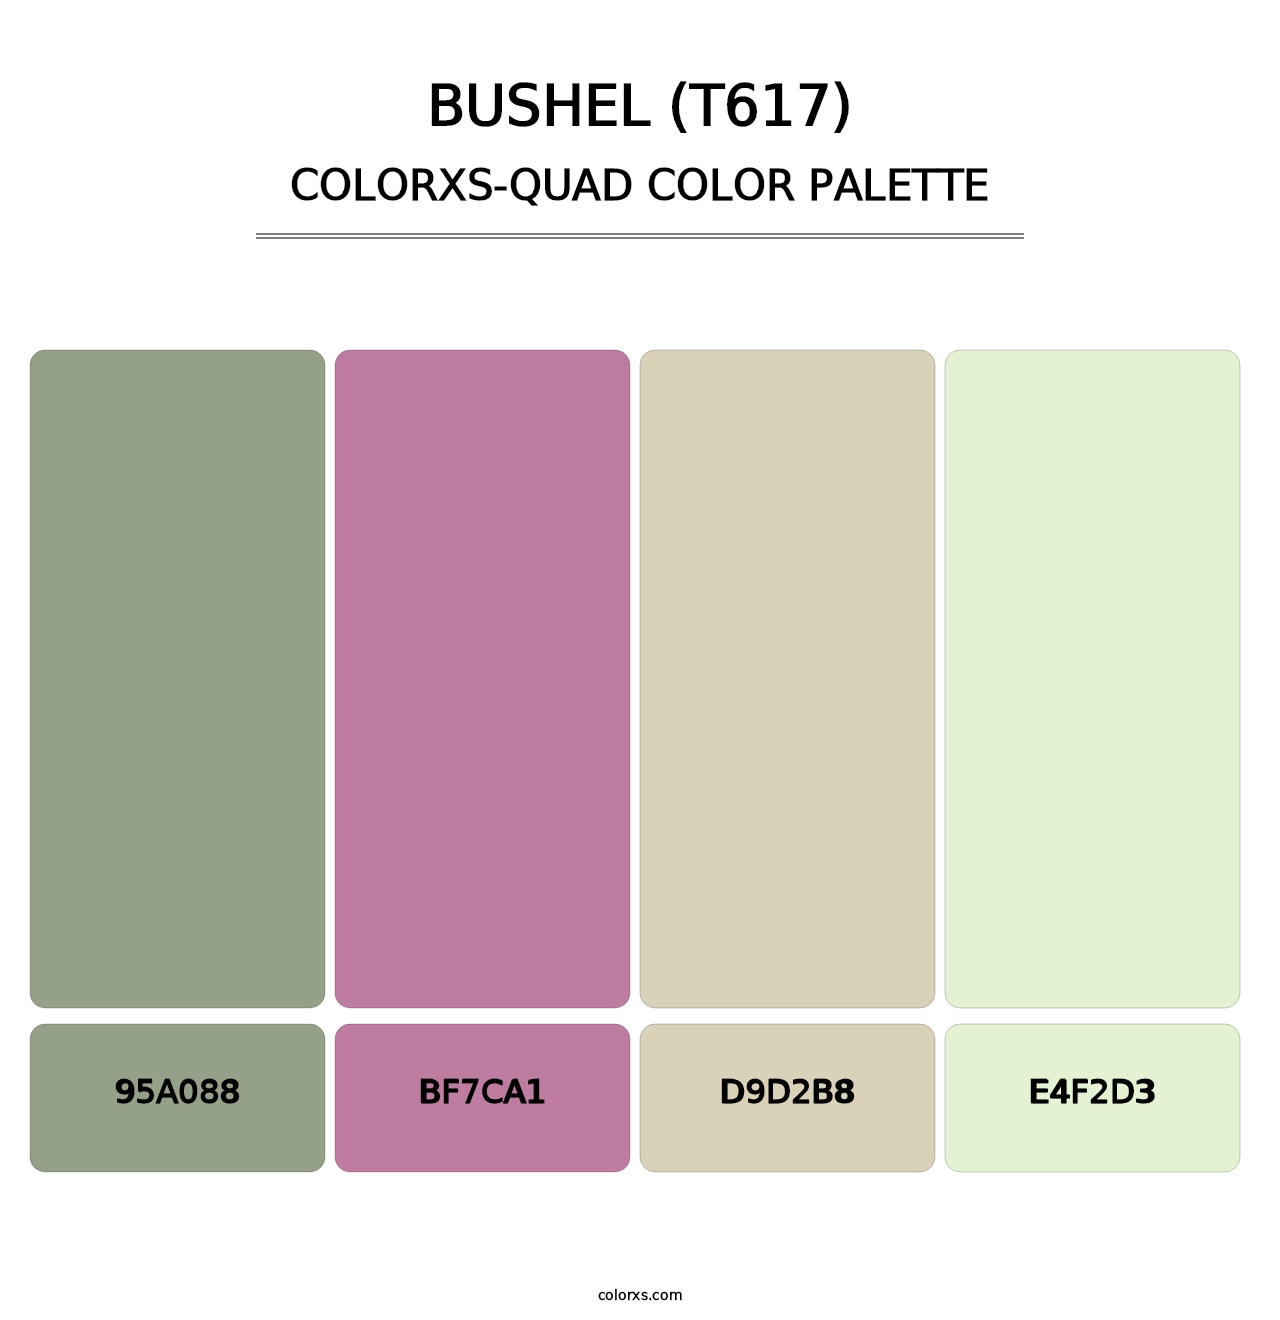 Bushel (T617) - Colorxs Quad Palette